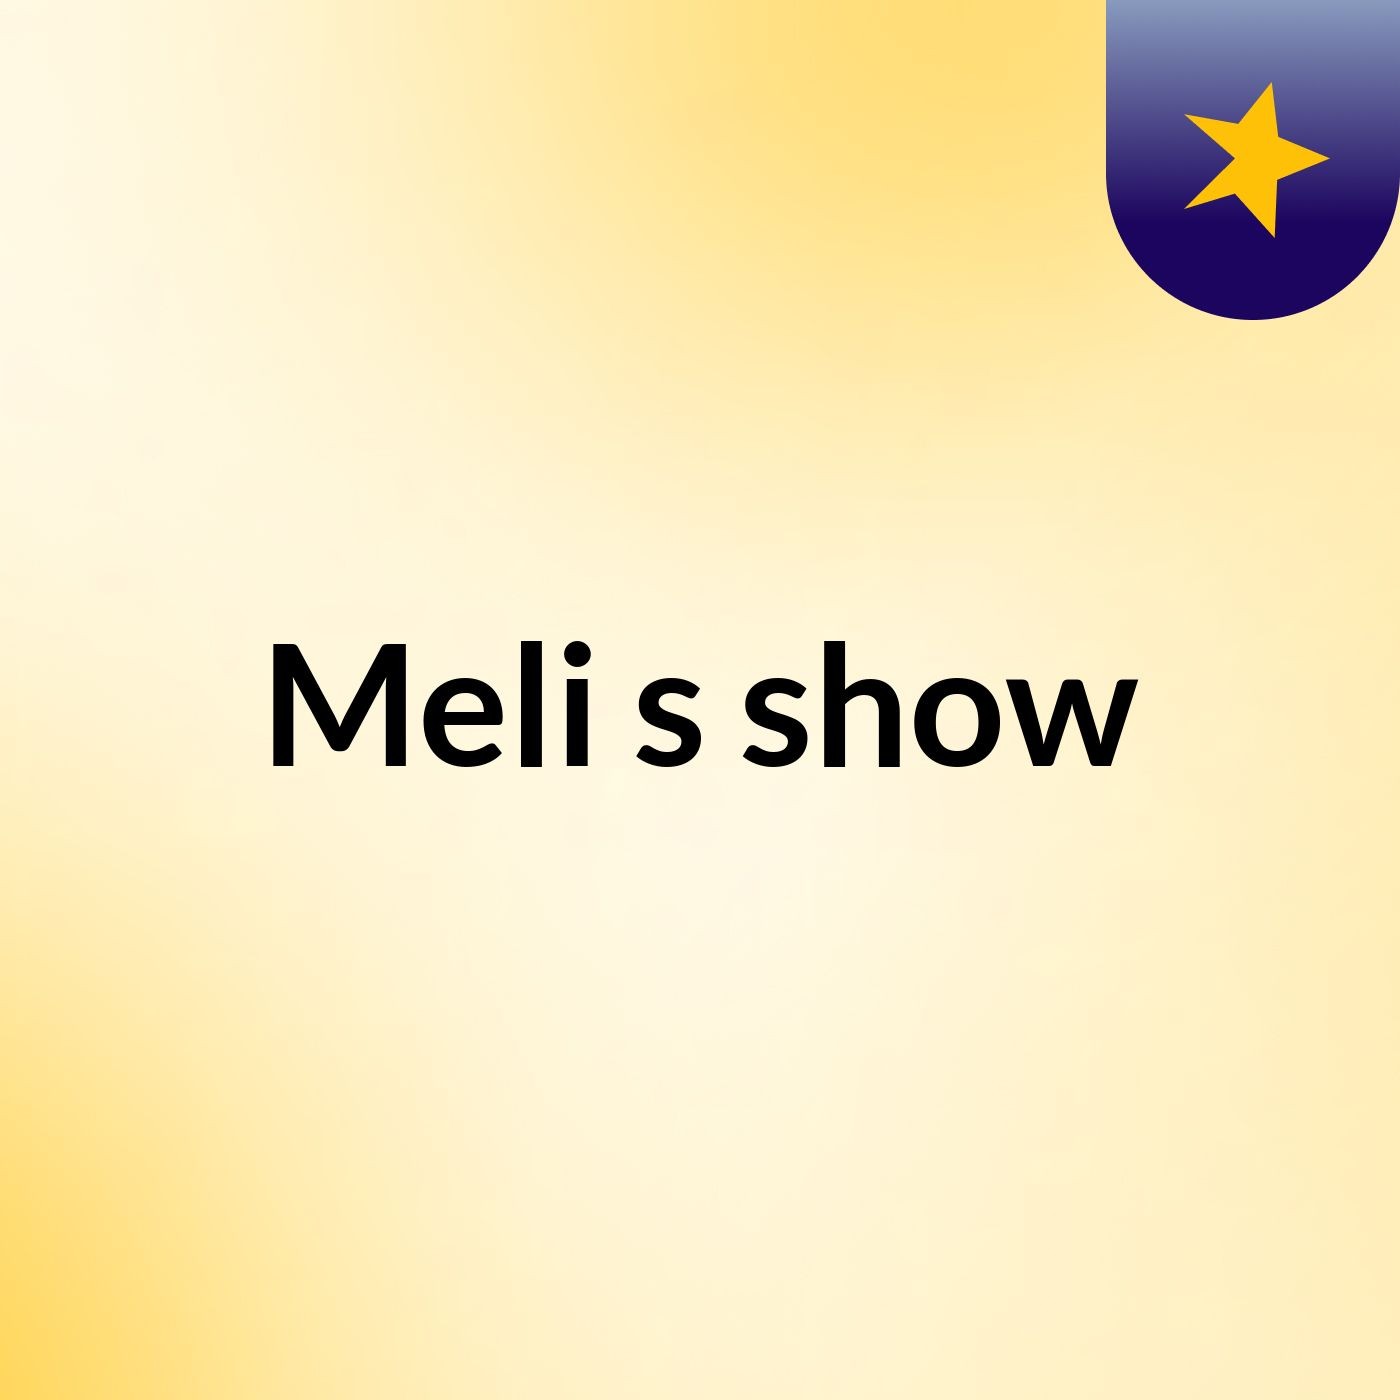 Meli's show